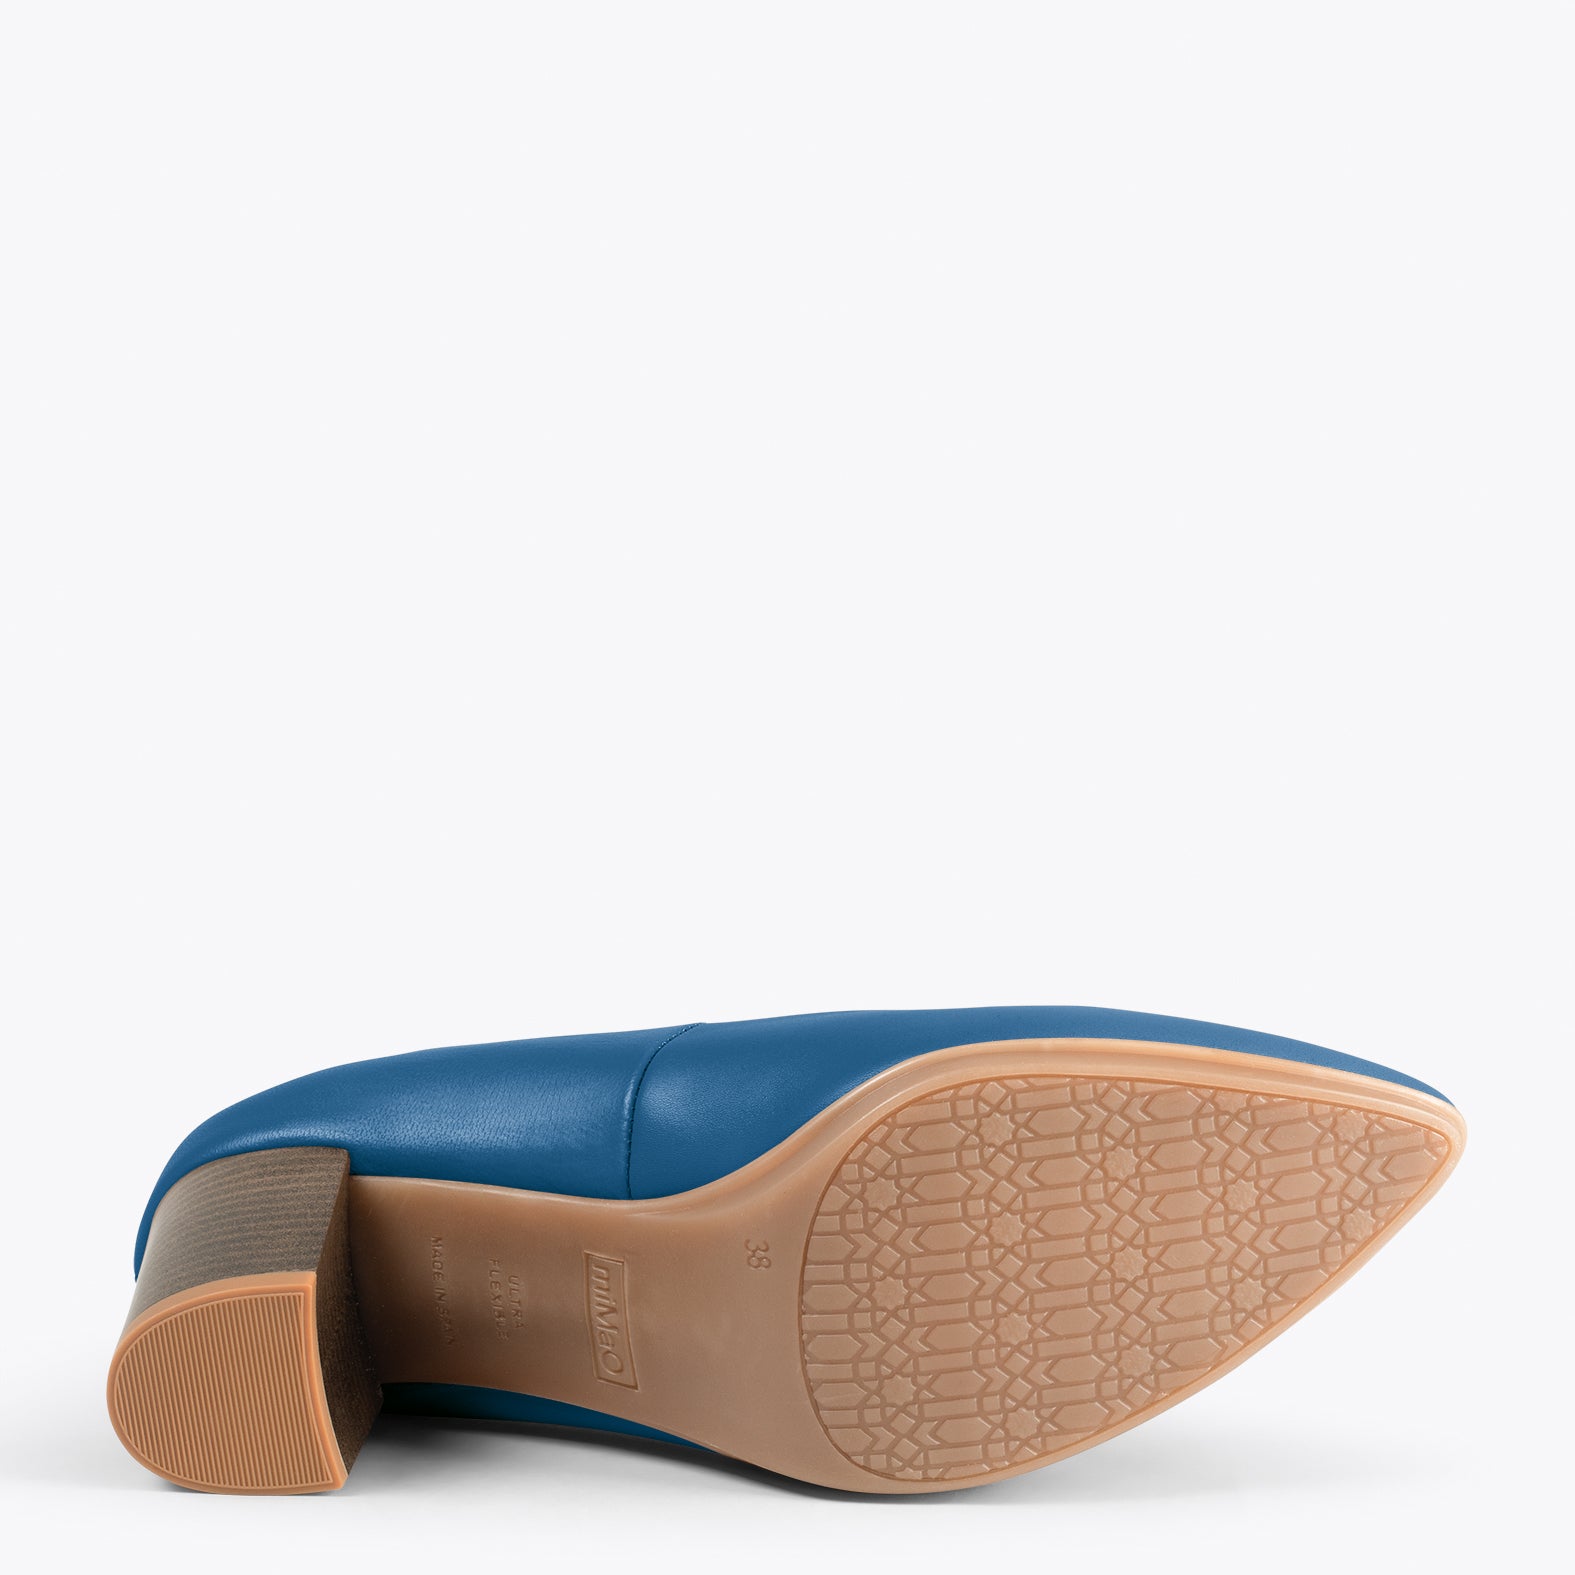 URBAN S SALON – Zapatos de tacón medio de napa AZUL